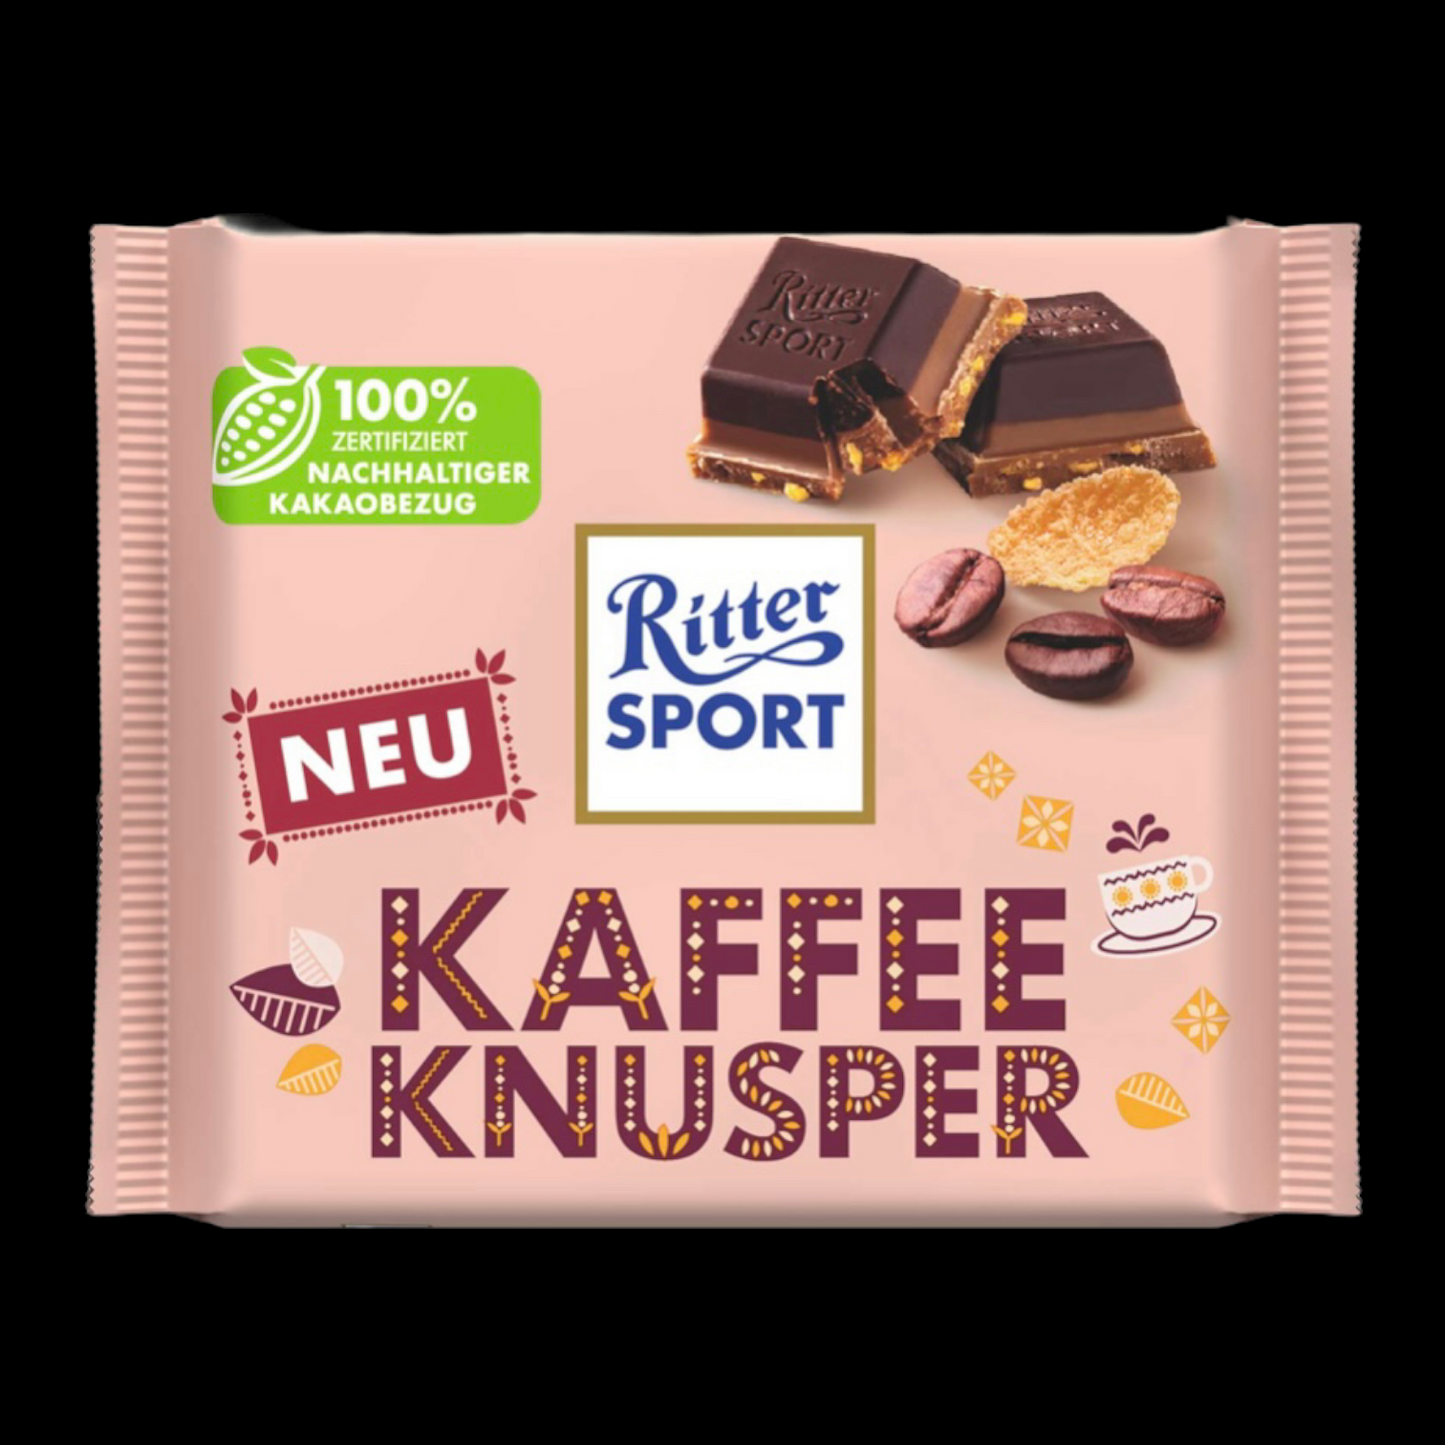 Ritter Sport Kaffee Knusper 100g